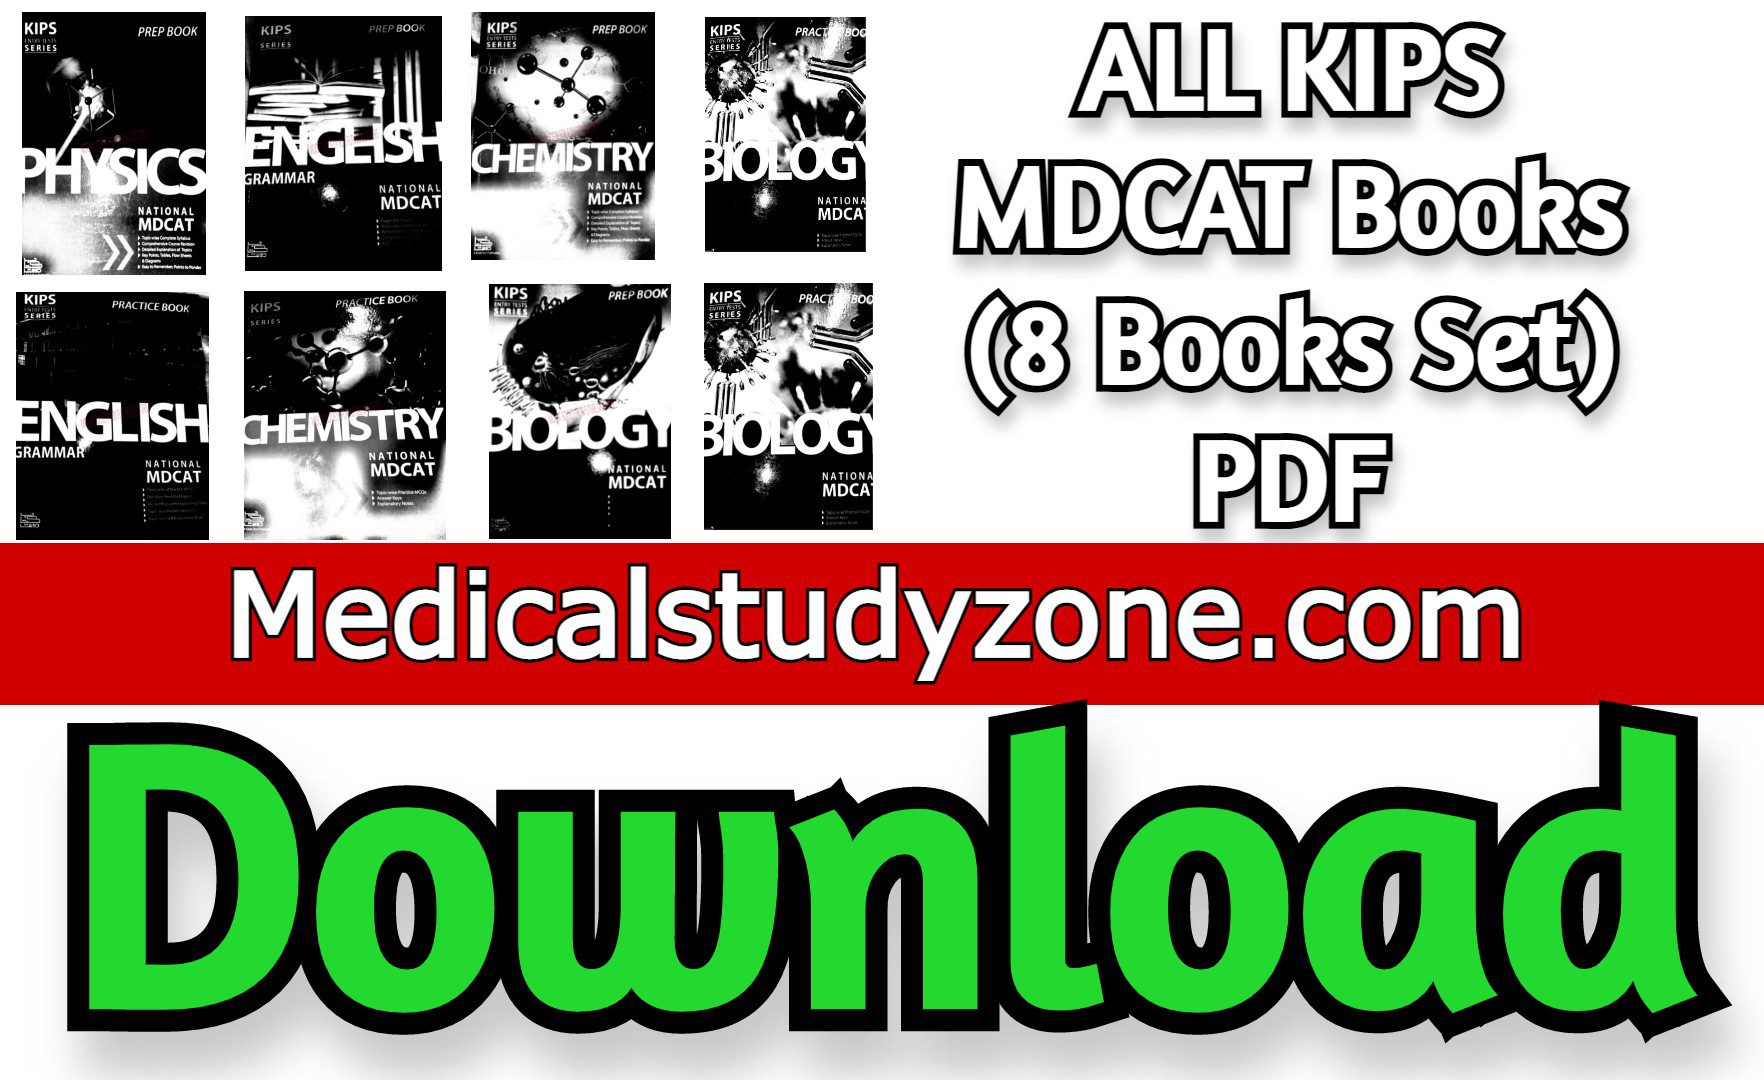 ALL KIPS MDCAT Books 2023 (8 Books Set) PDF Free Download